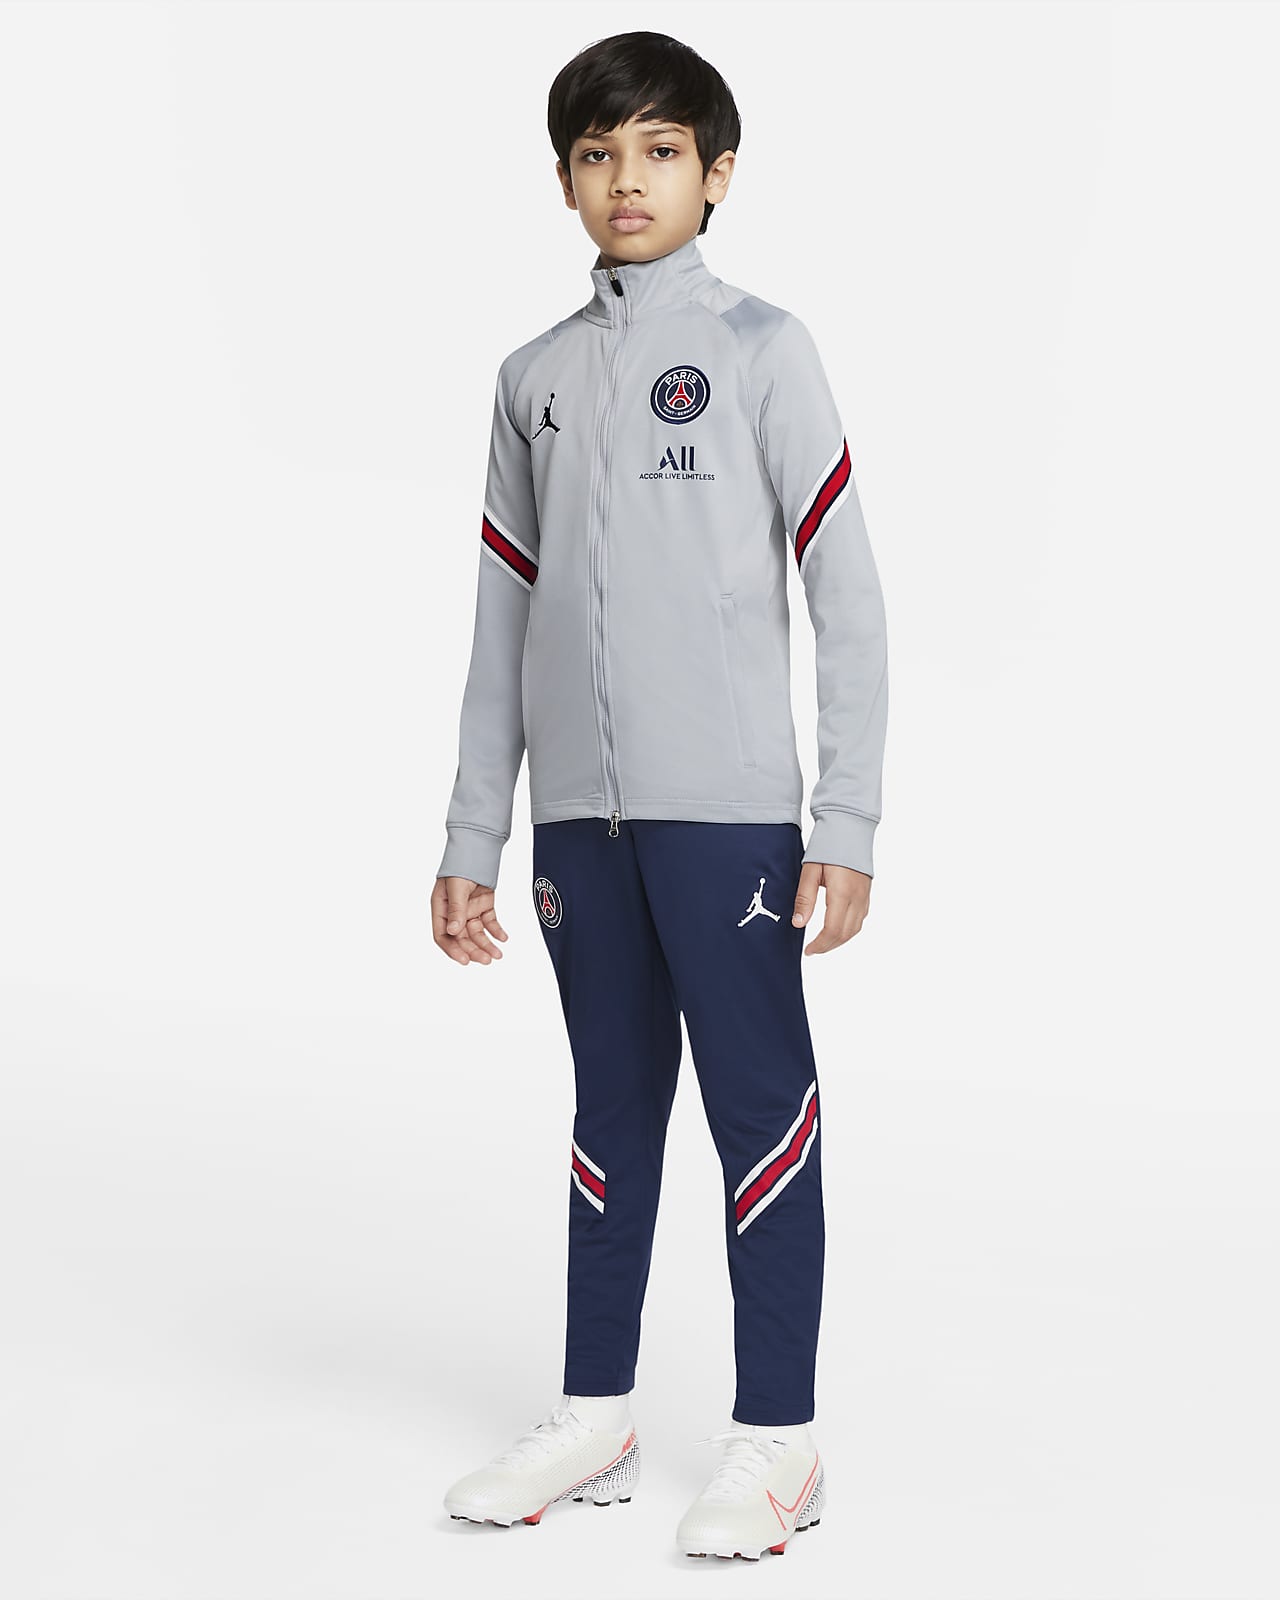 Goot Lenen Achterhouden Paris Saint-Germain Strike Vierde Nike voetbaltrainingspak met Dri-FIT voor  kids. Nike BE